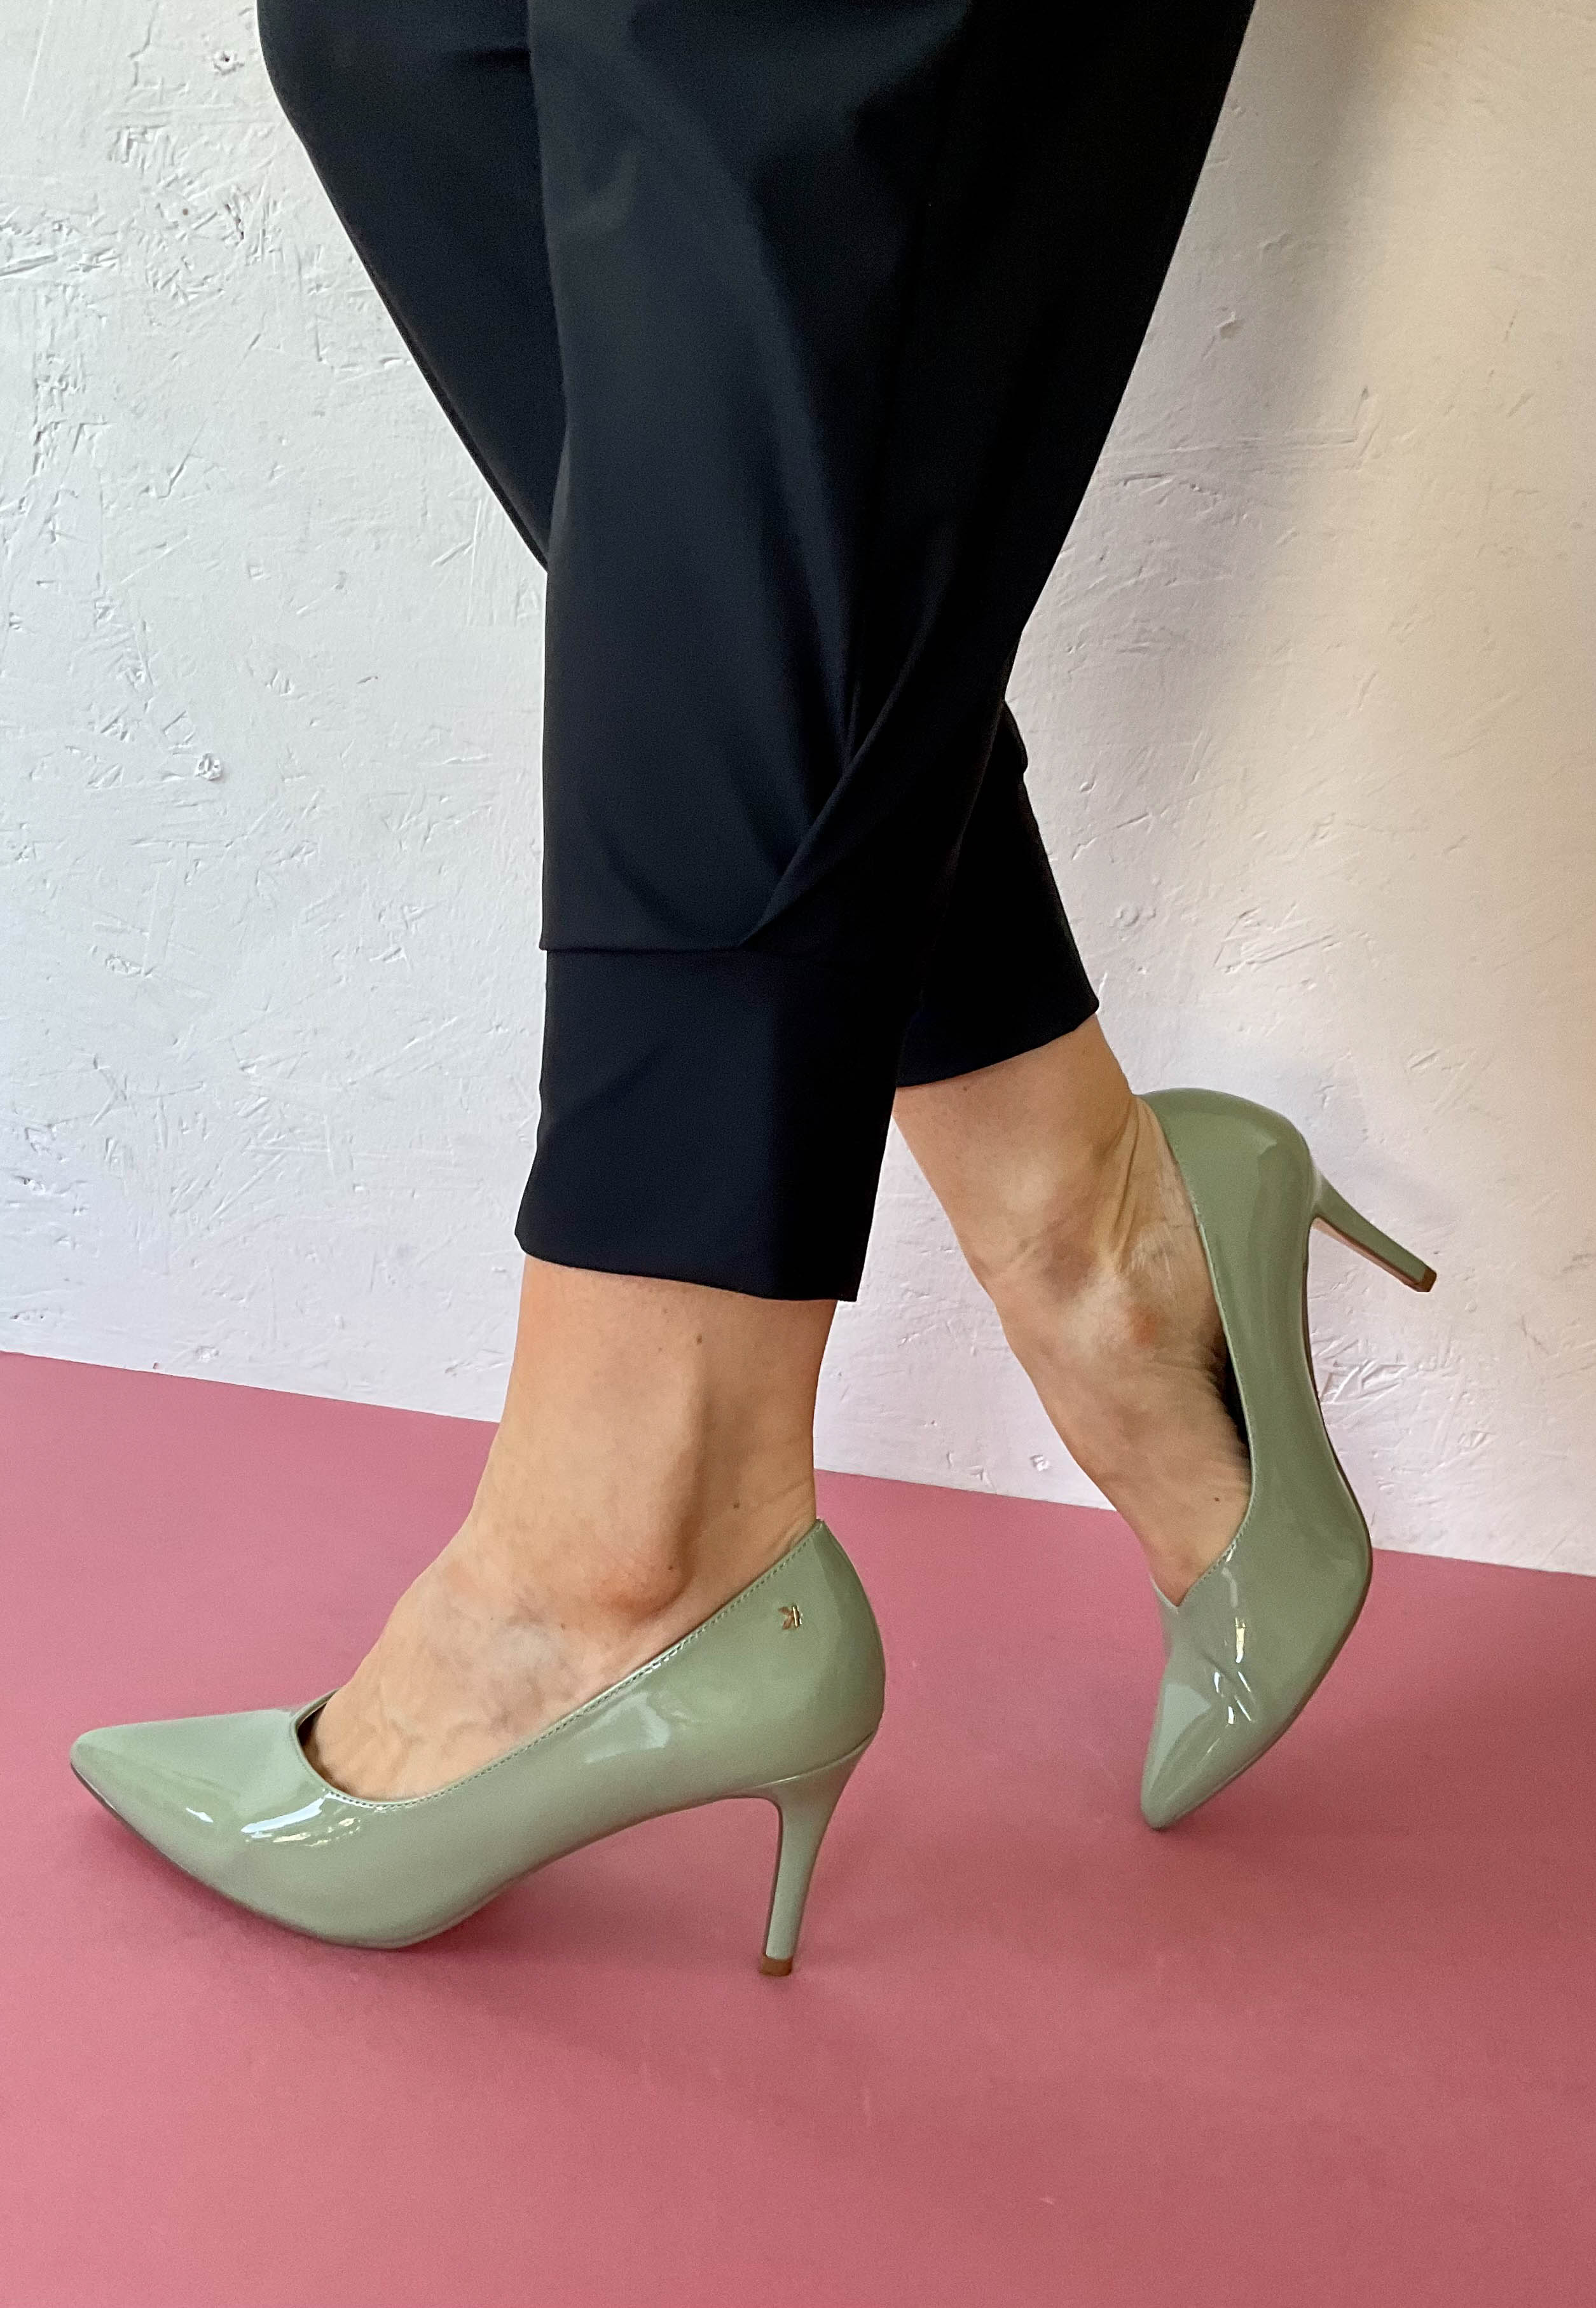 Reiss Sophia Atelier Italian Leather Strappy Heels | REISS Ireland